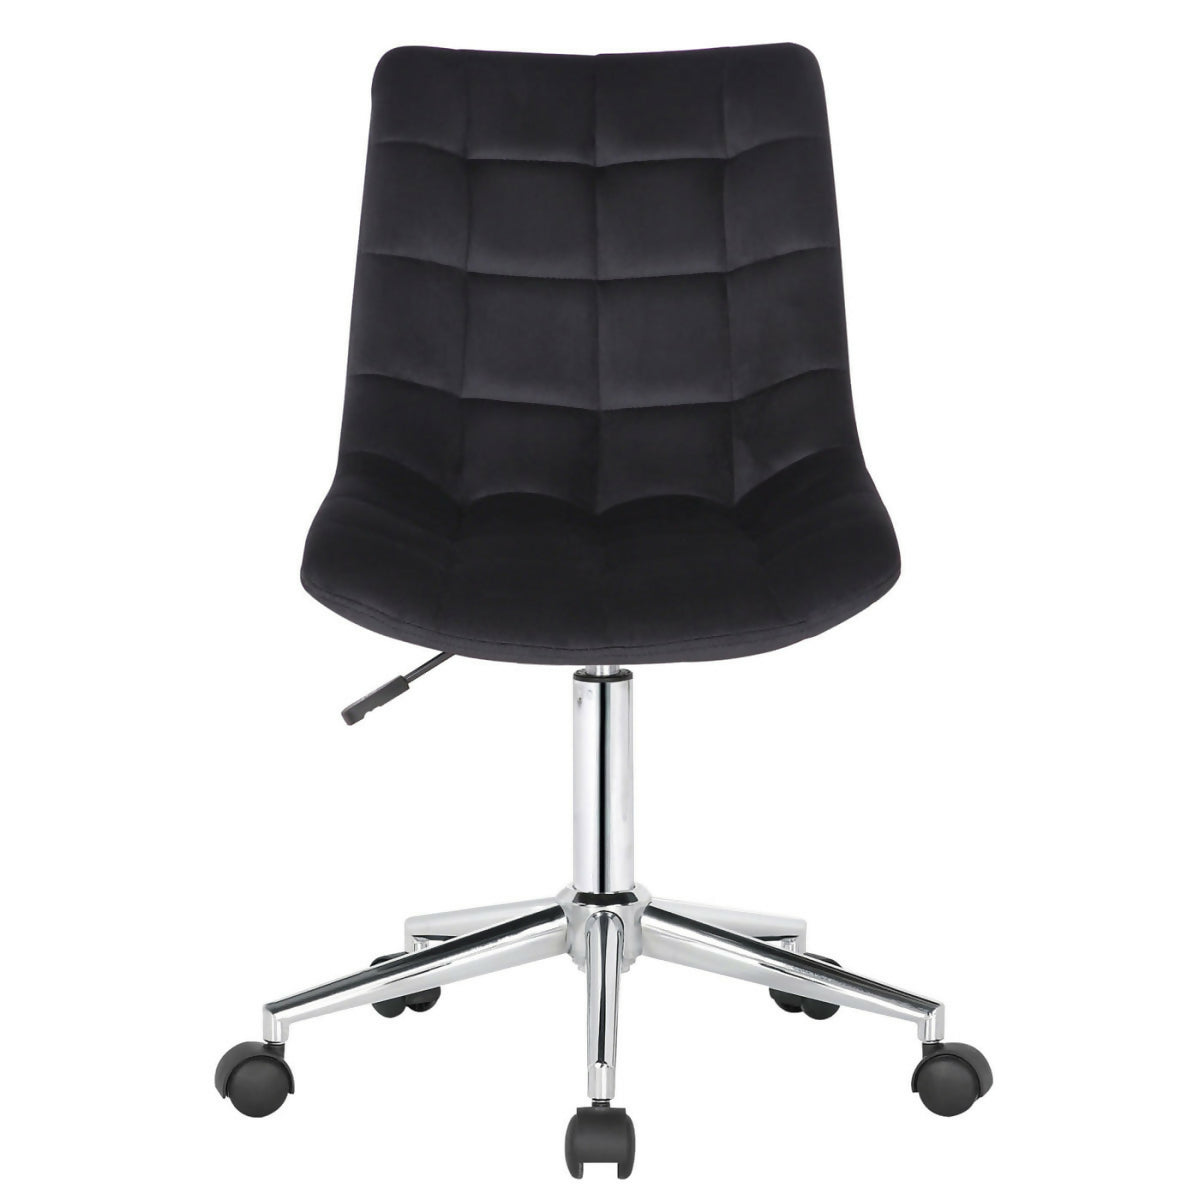 Medford office chair - Black velvet